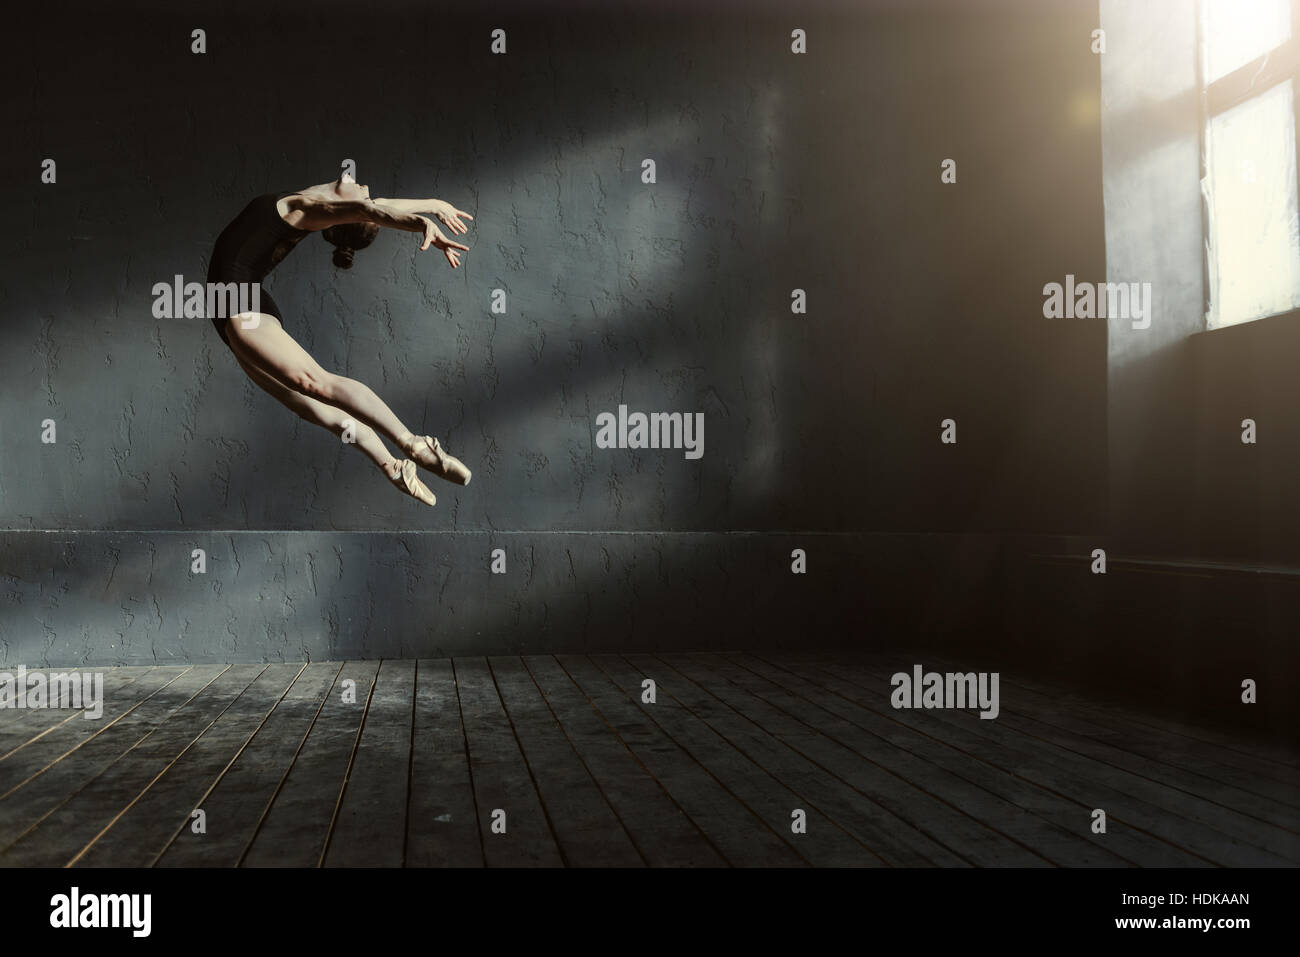 Bailarín de ballet profesional realiza en la oscuridad de la habitación iluminada Foto de stock